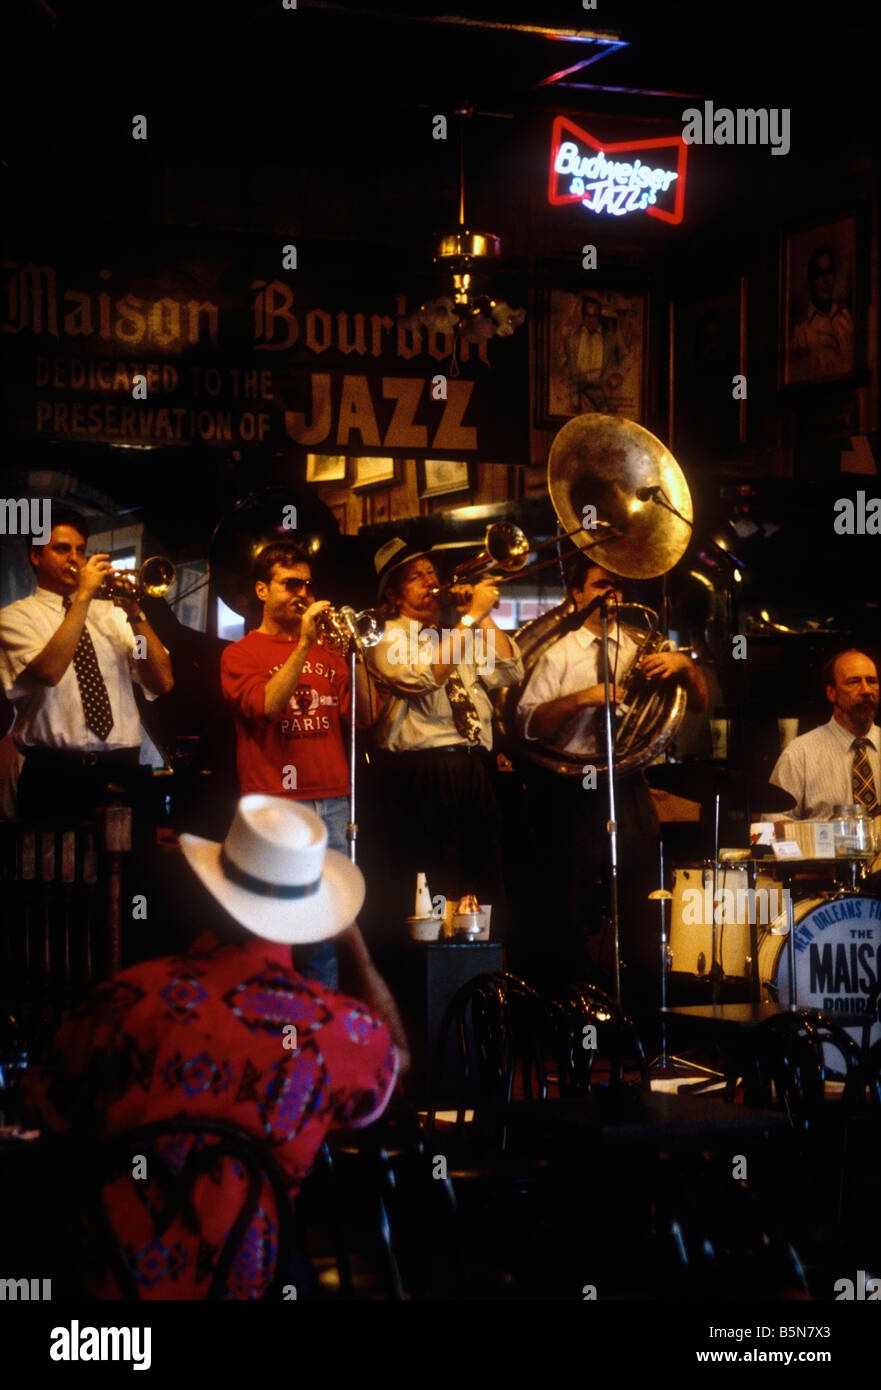 Banda de Jazz tradicional en Mason Bourbon Bourbon Street bar New Orleans USA Foto de stock